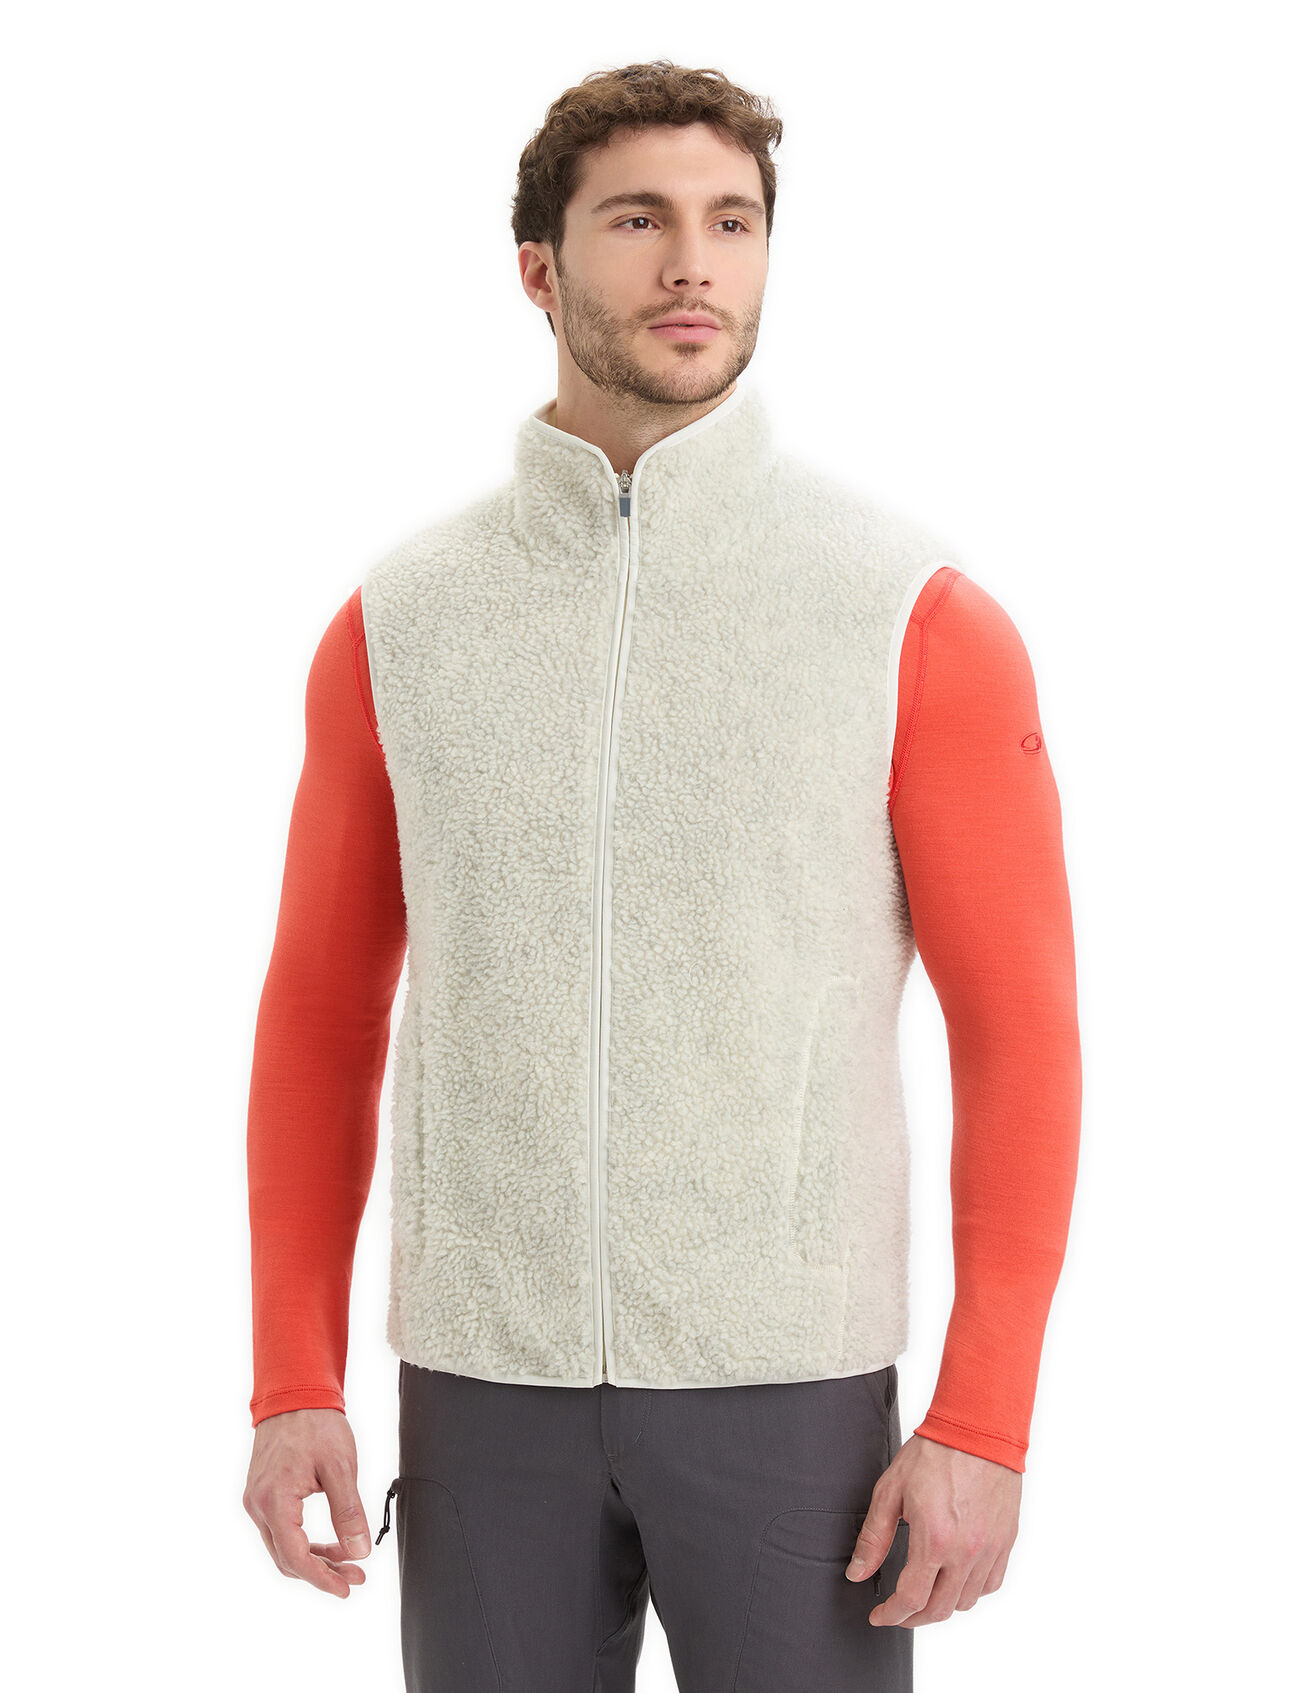 Heren realfleece™ High Pile vest van merinowol De RealFleece™ High Pile Vest is een regular-fit merino fleece bodywarmer die je het hele jaar warmte en comfort biedt. De bodywarmer voegt een perfecte dosis isolatie toe aan al je actieve bezigheden.